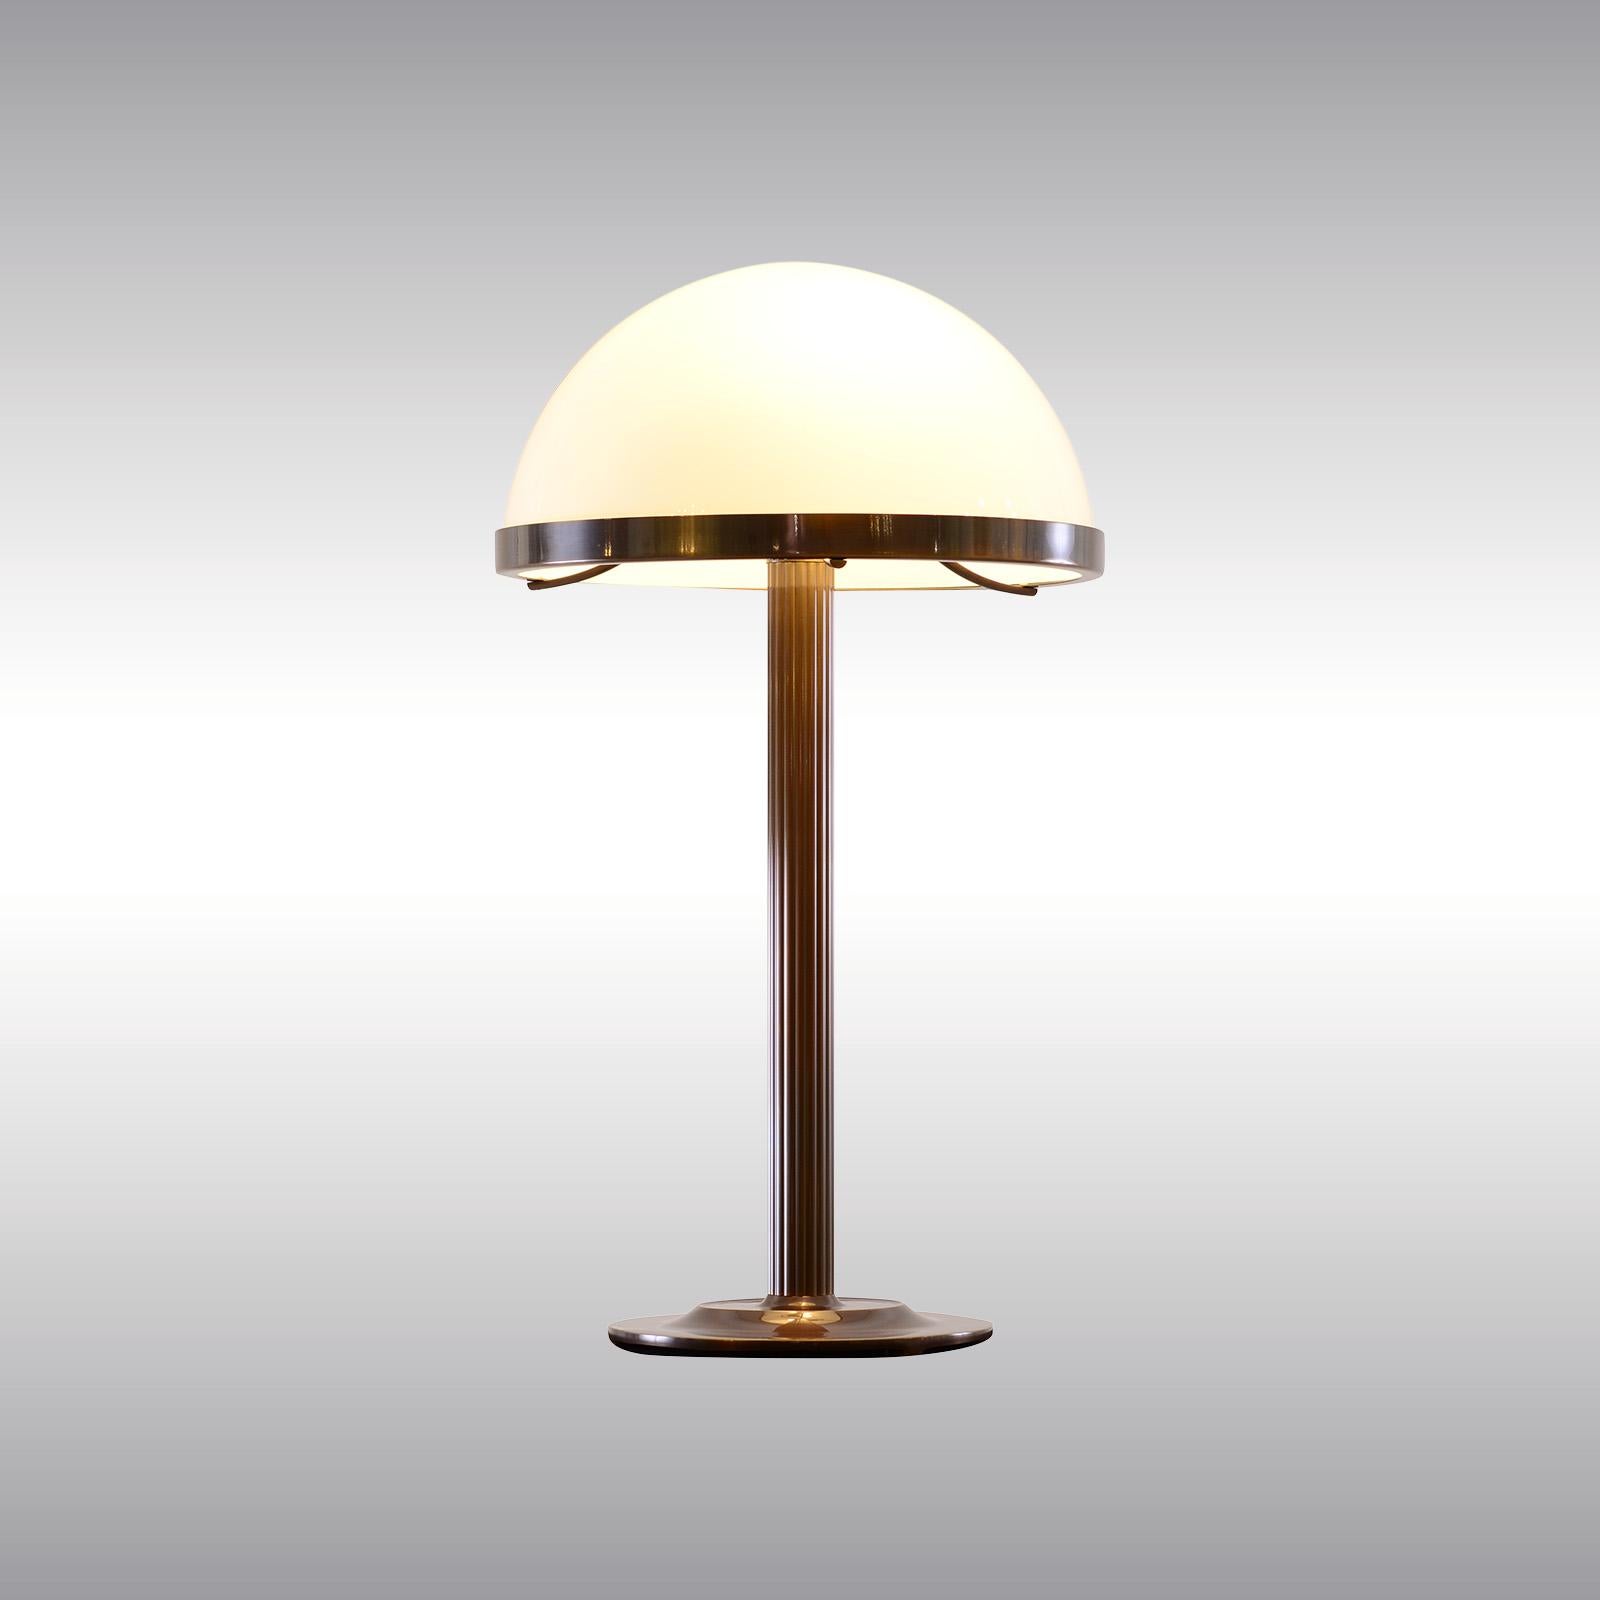 Lampe de table avec abat-jour en verre opalin, conçue pour Villa Steiner

La plupart des composants sont conformes aux réglementations UL. Moyennant un supplément, nous établissons une liste et un label UL pour nos appareils. 

Maintenant fabriqué